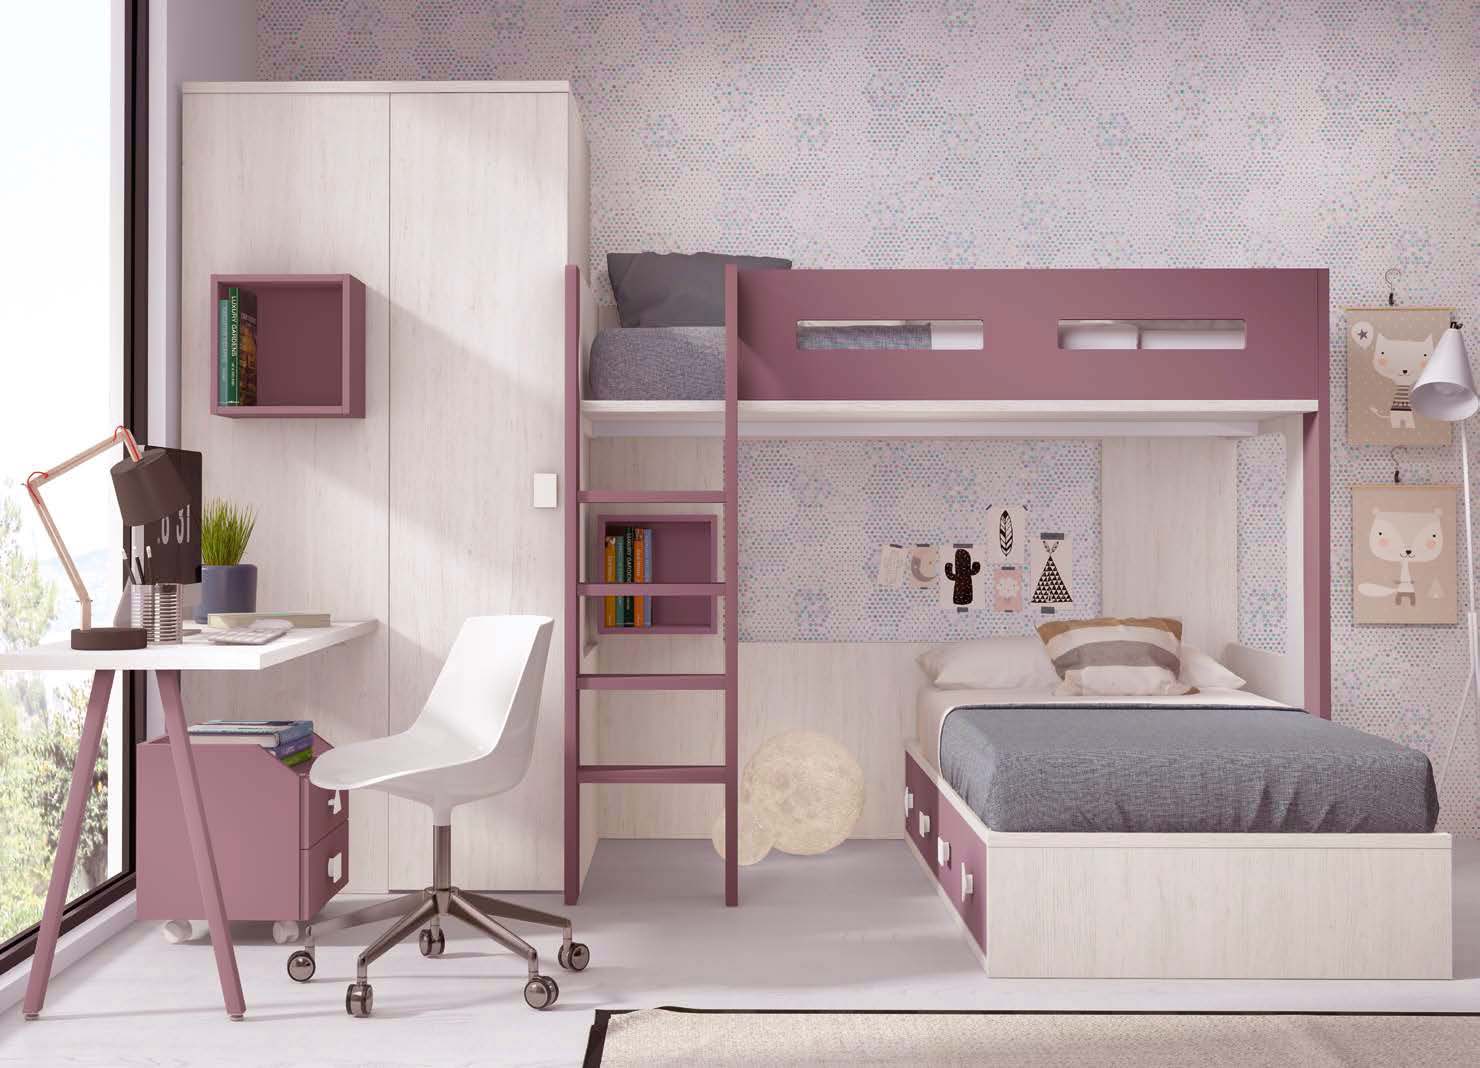 Chambre ado composée de lit compact, armoire d'angle, bureau et étagères